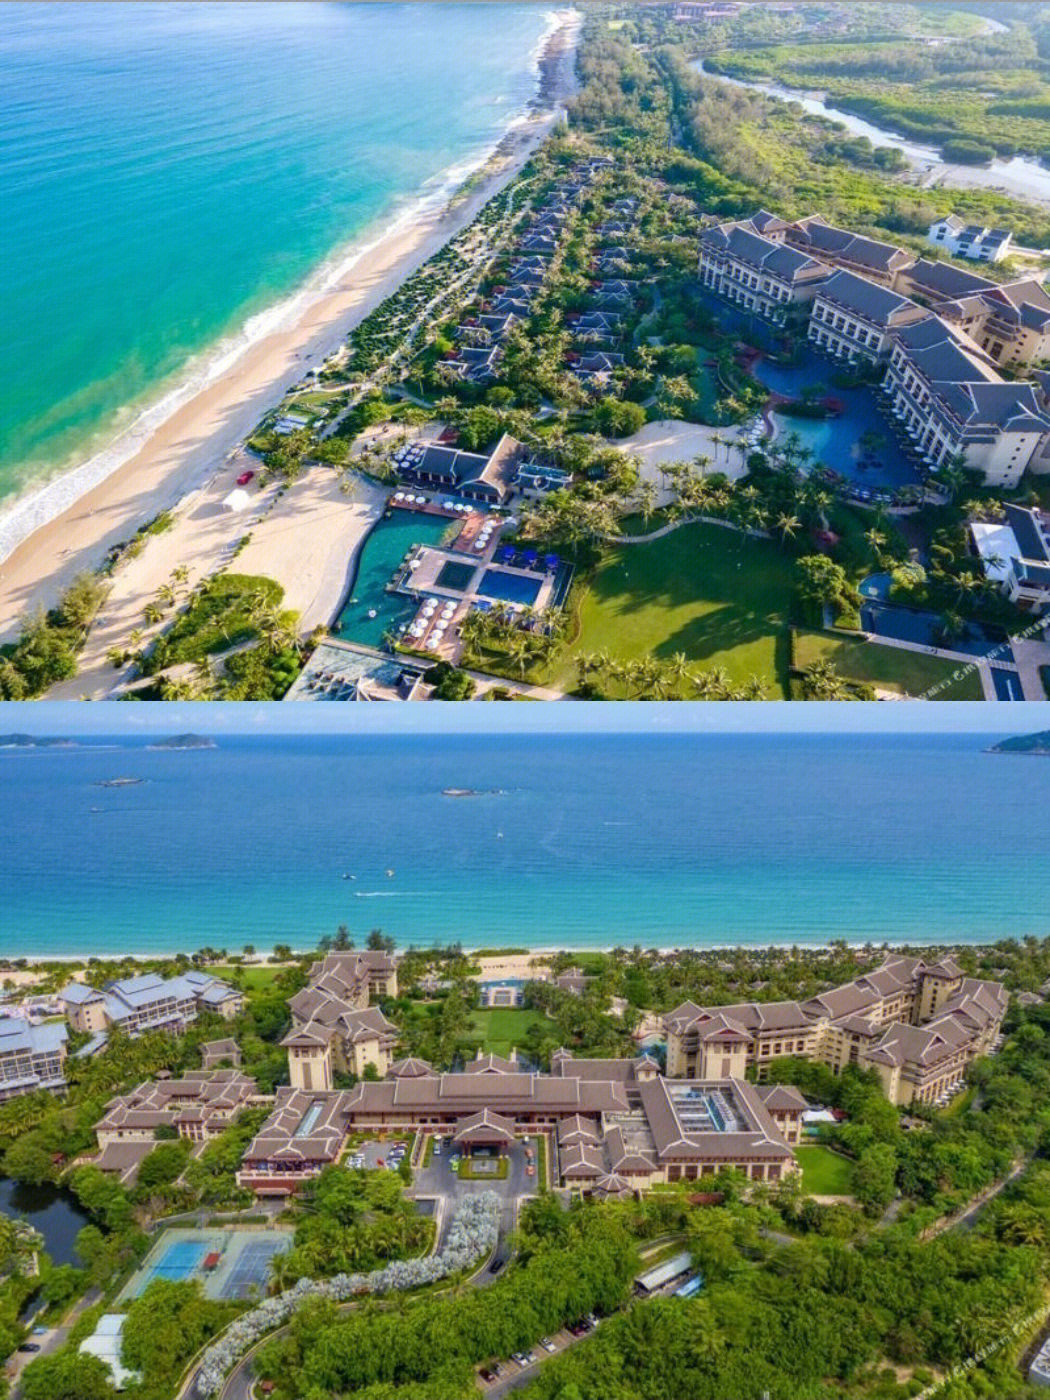 尽享碧海蓝天的壮丽美景 酒店坐落于三亚风光旖旎的亚龙湾畔,尽享碧海